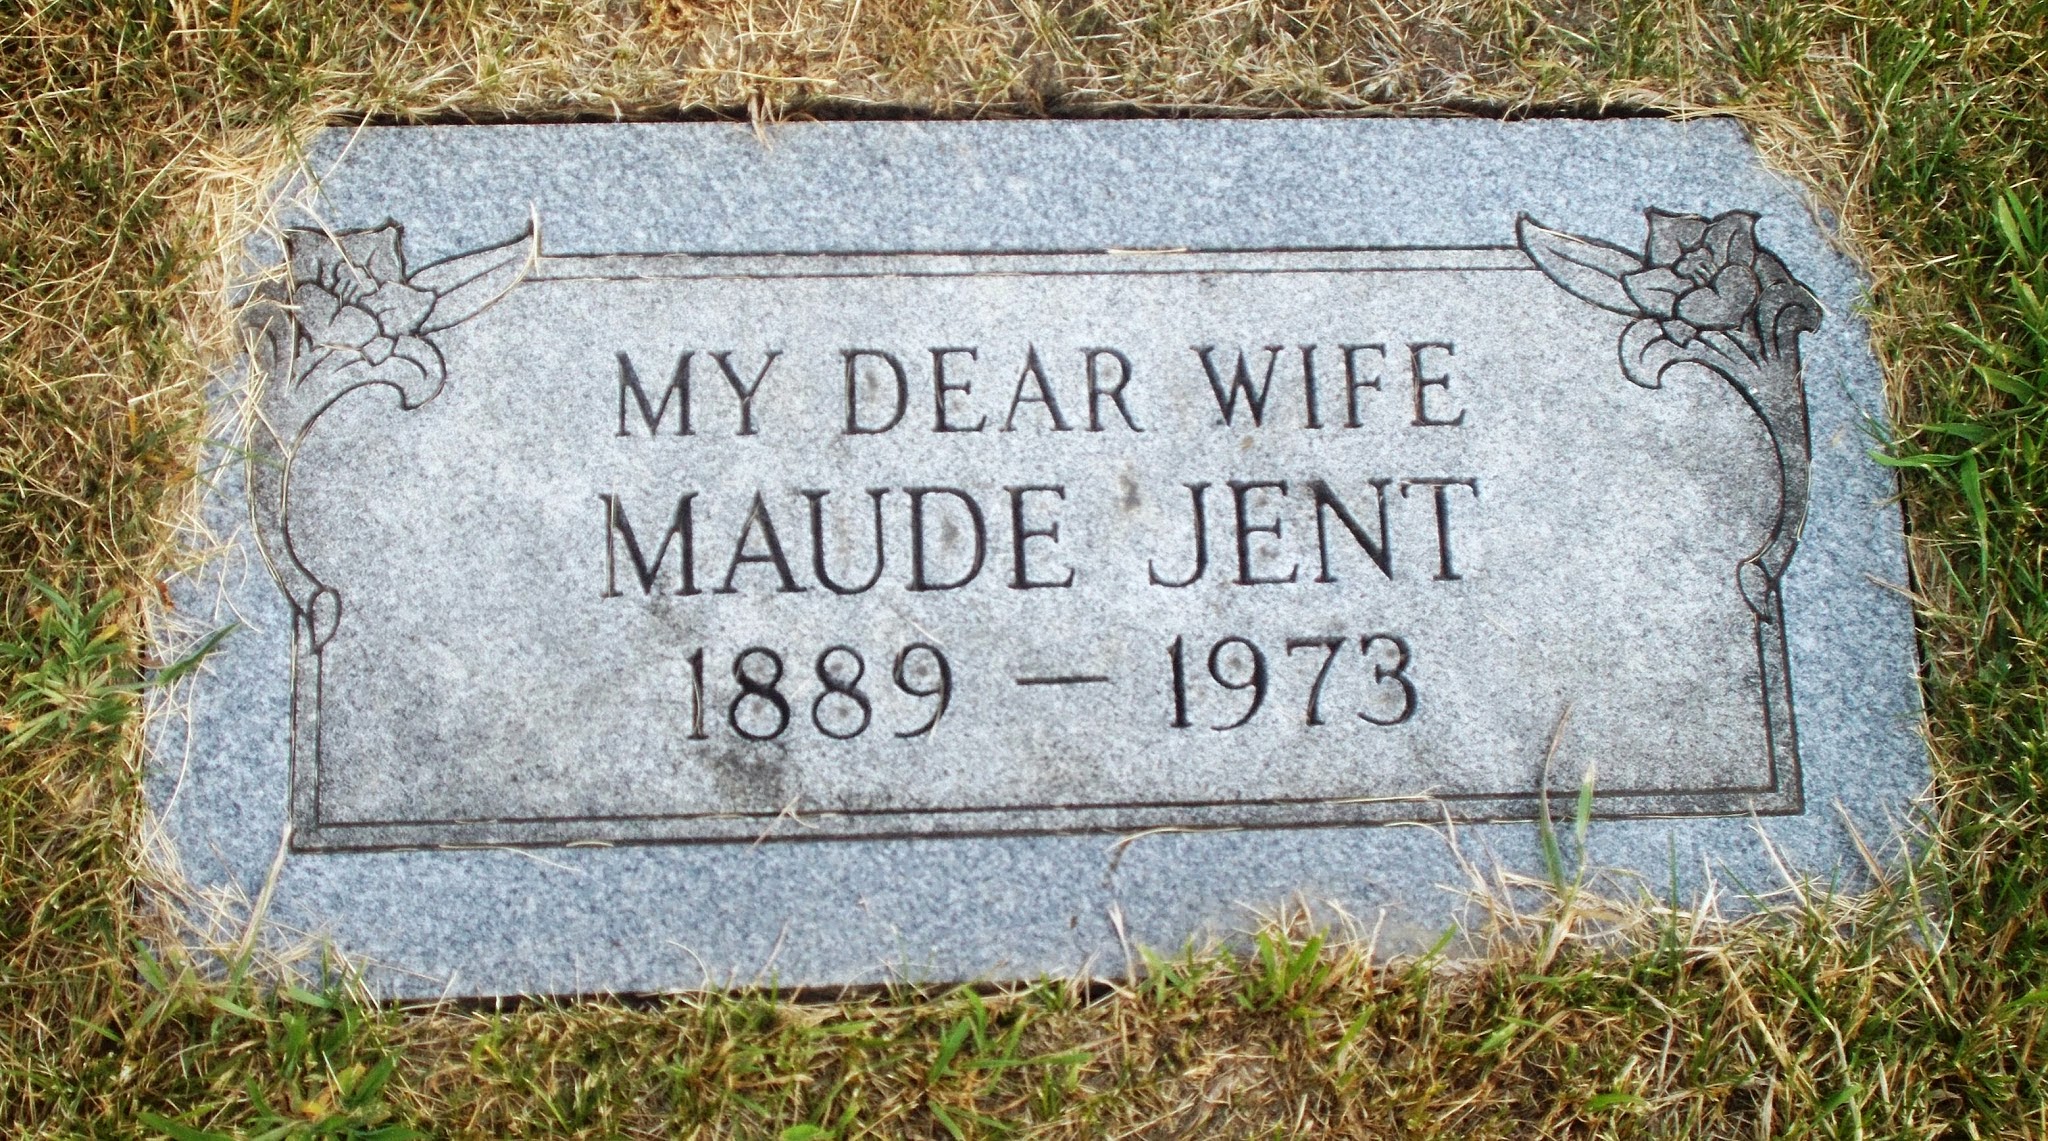 Maude Jent